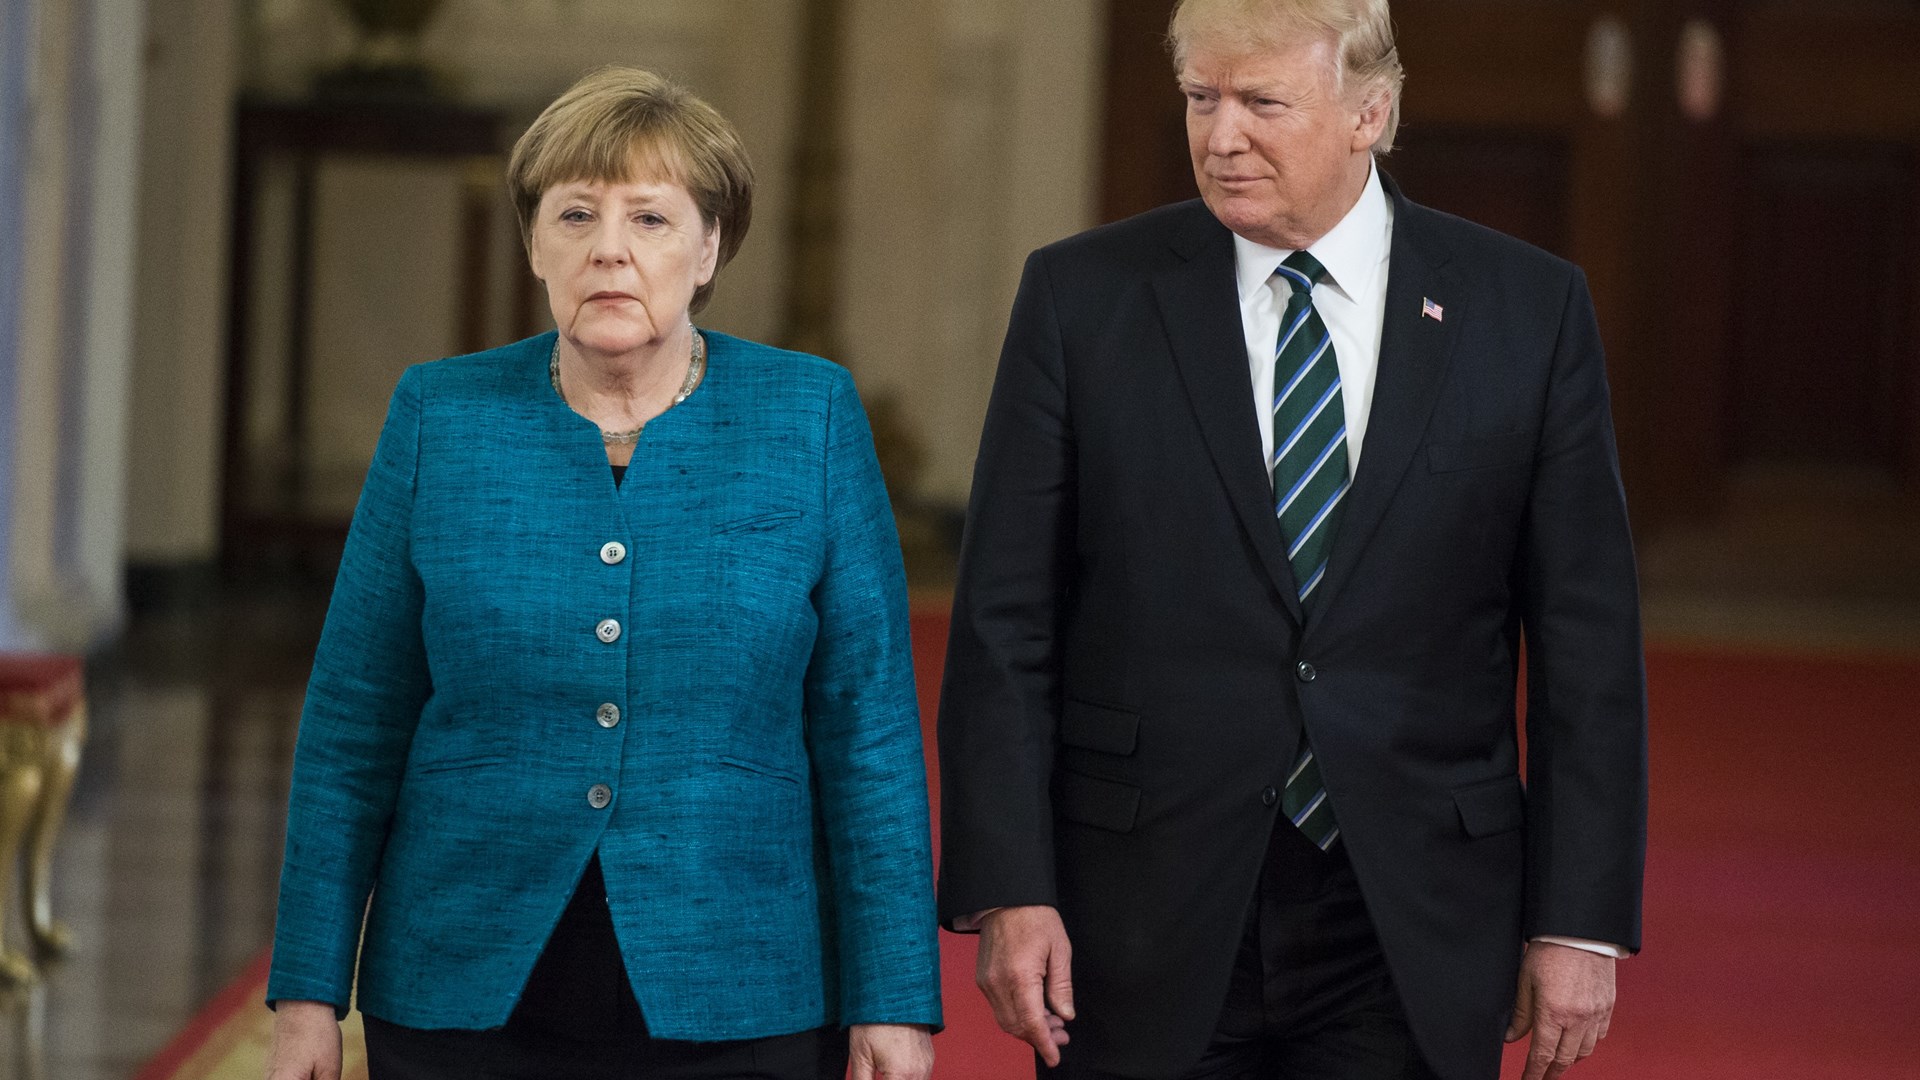 Συνάντηση Τραμπ και Μέρκελ στις 27 Απριλίου – Οι διαφορές των δύο χωρών στο επίκεντρο